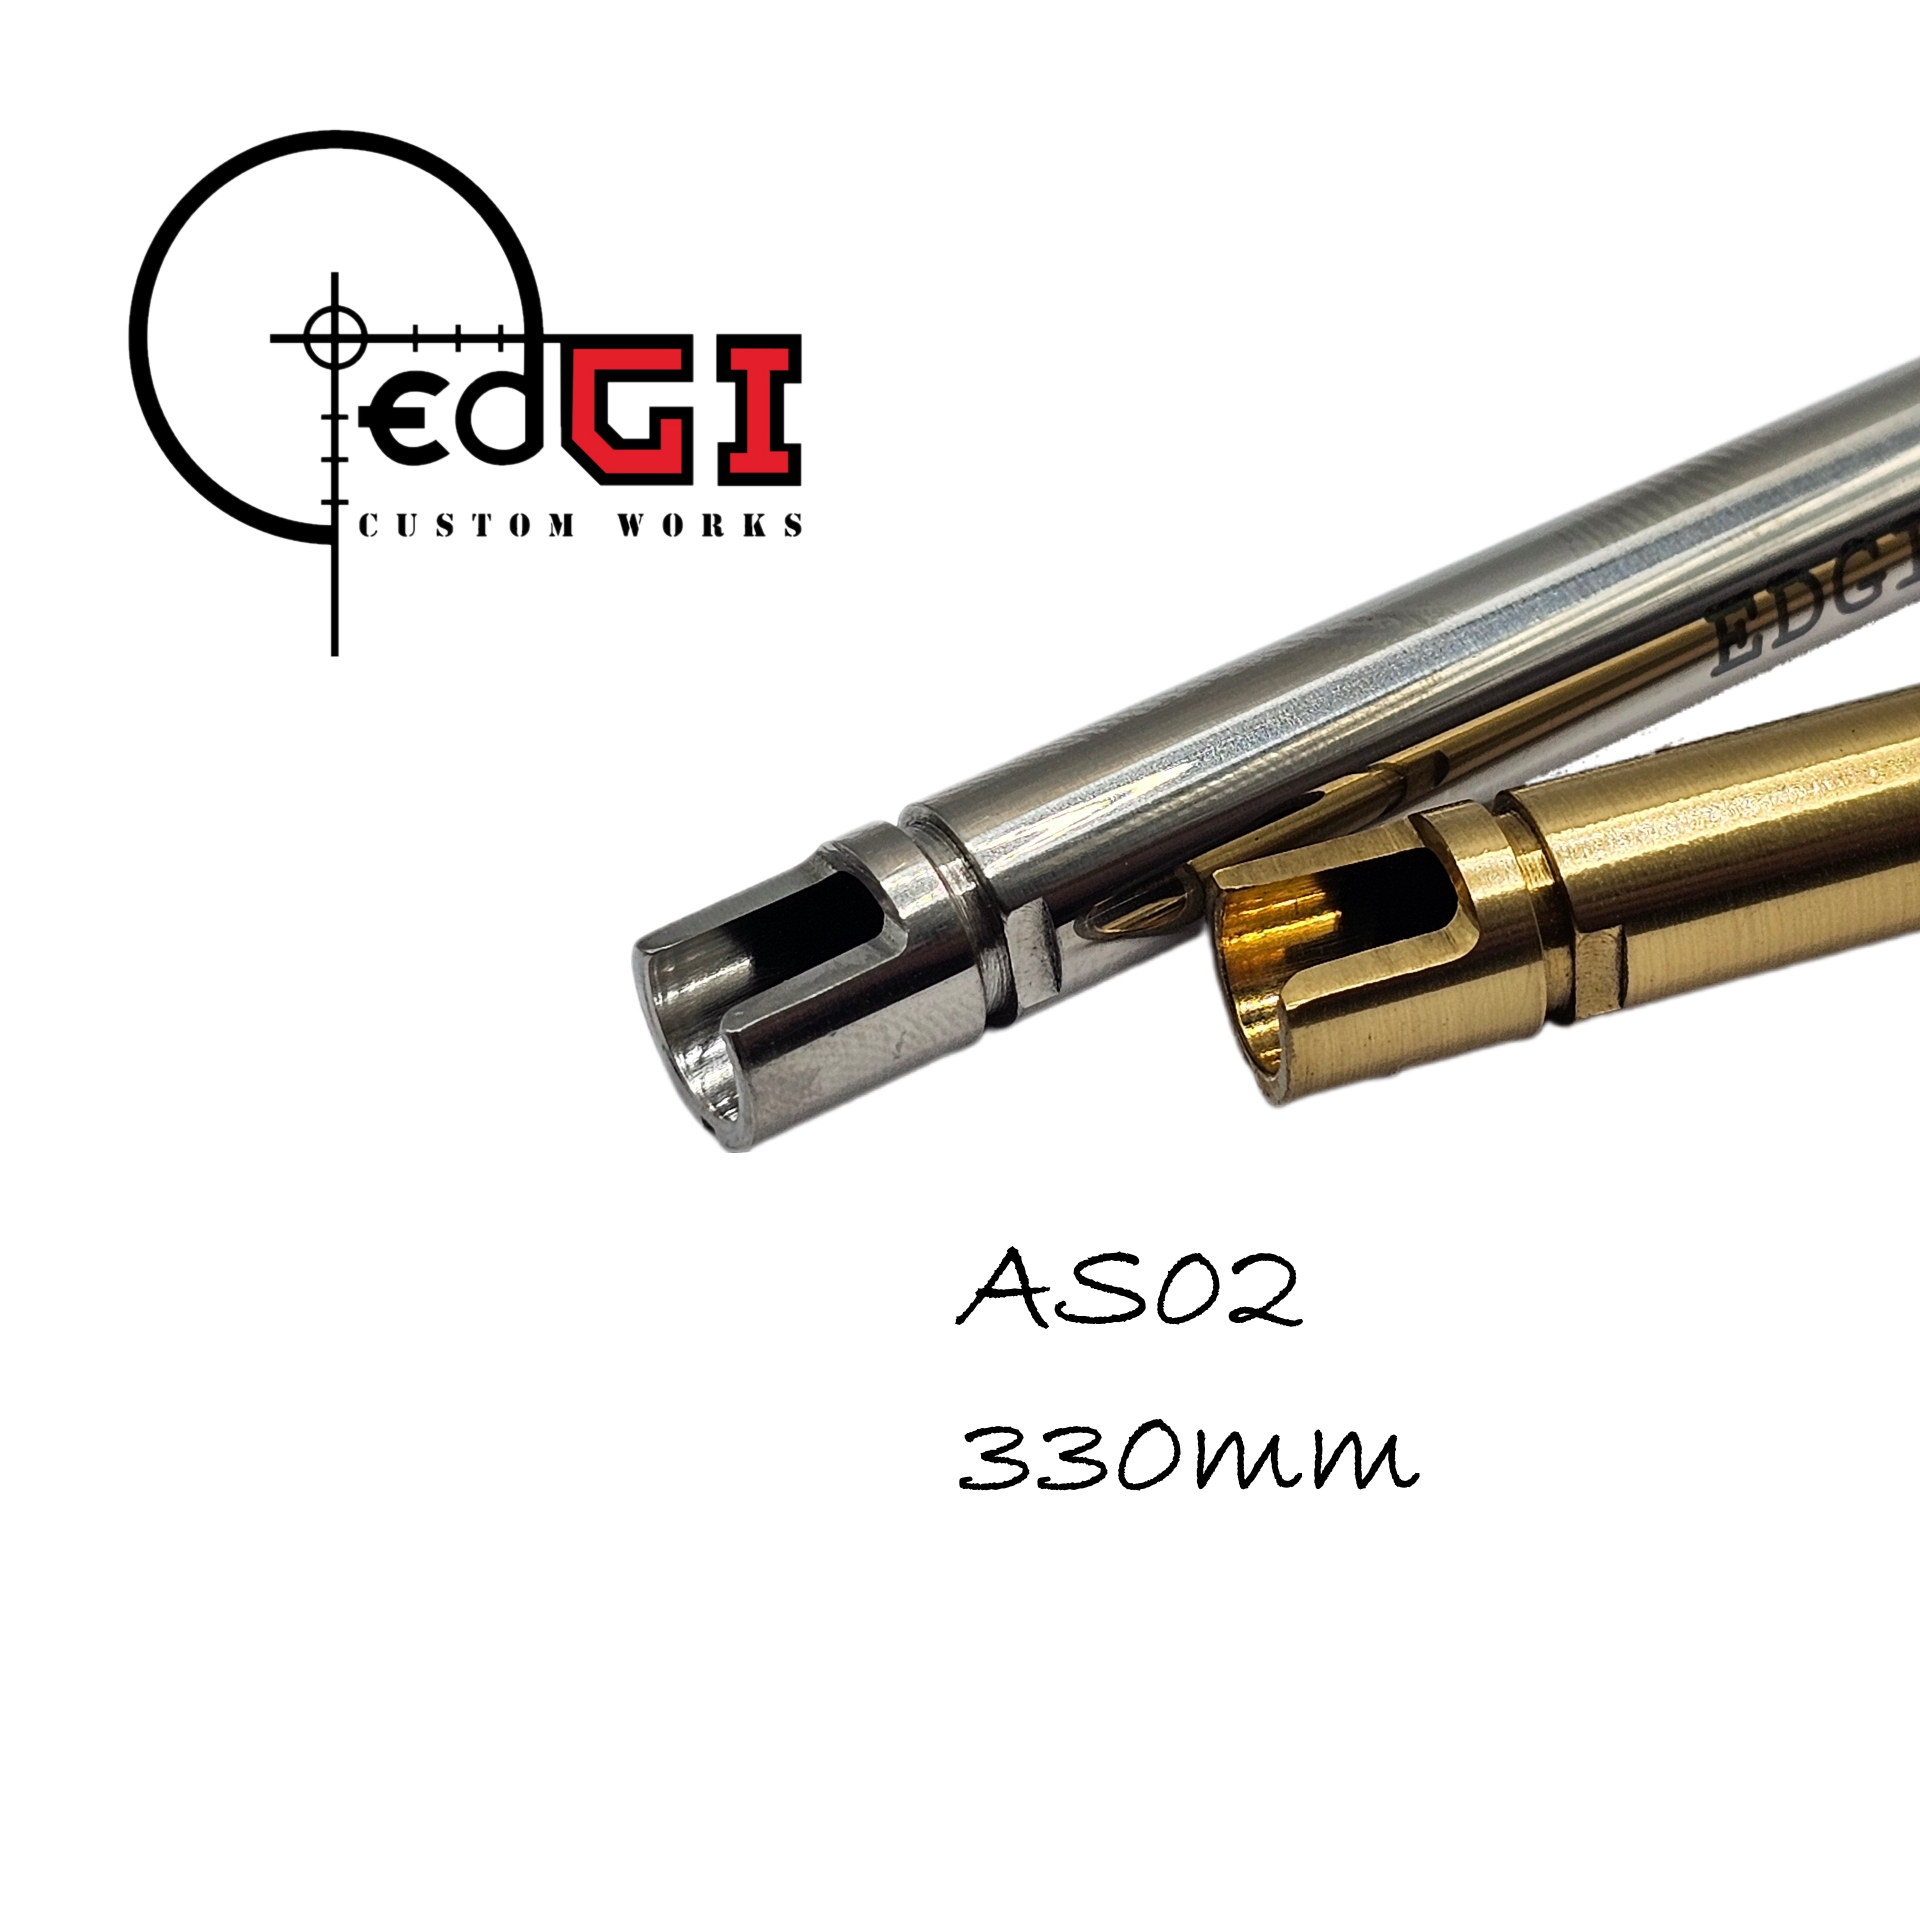 Edgi Custom Works - 330mm VSR Inner Barrel - AS02